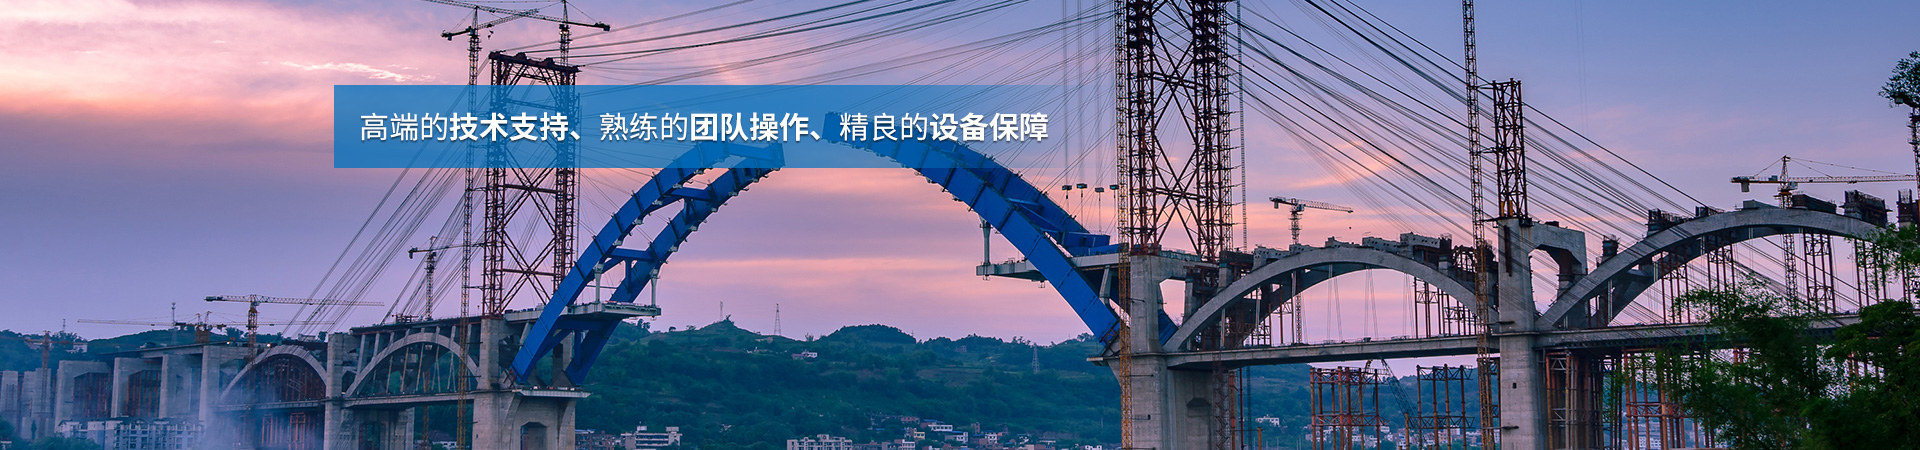 湖南省中南桥梁安装工程有限公司_湖南桥梁安装|旧桥加固改造|桥梁工程技术咨询